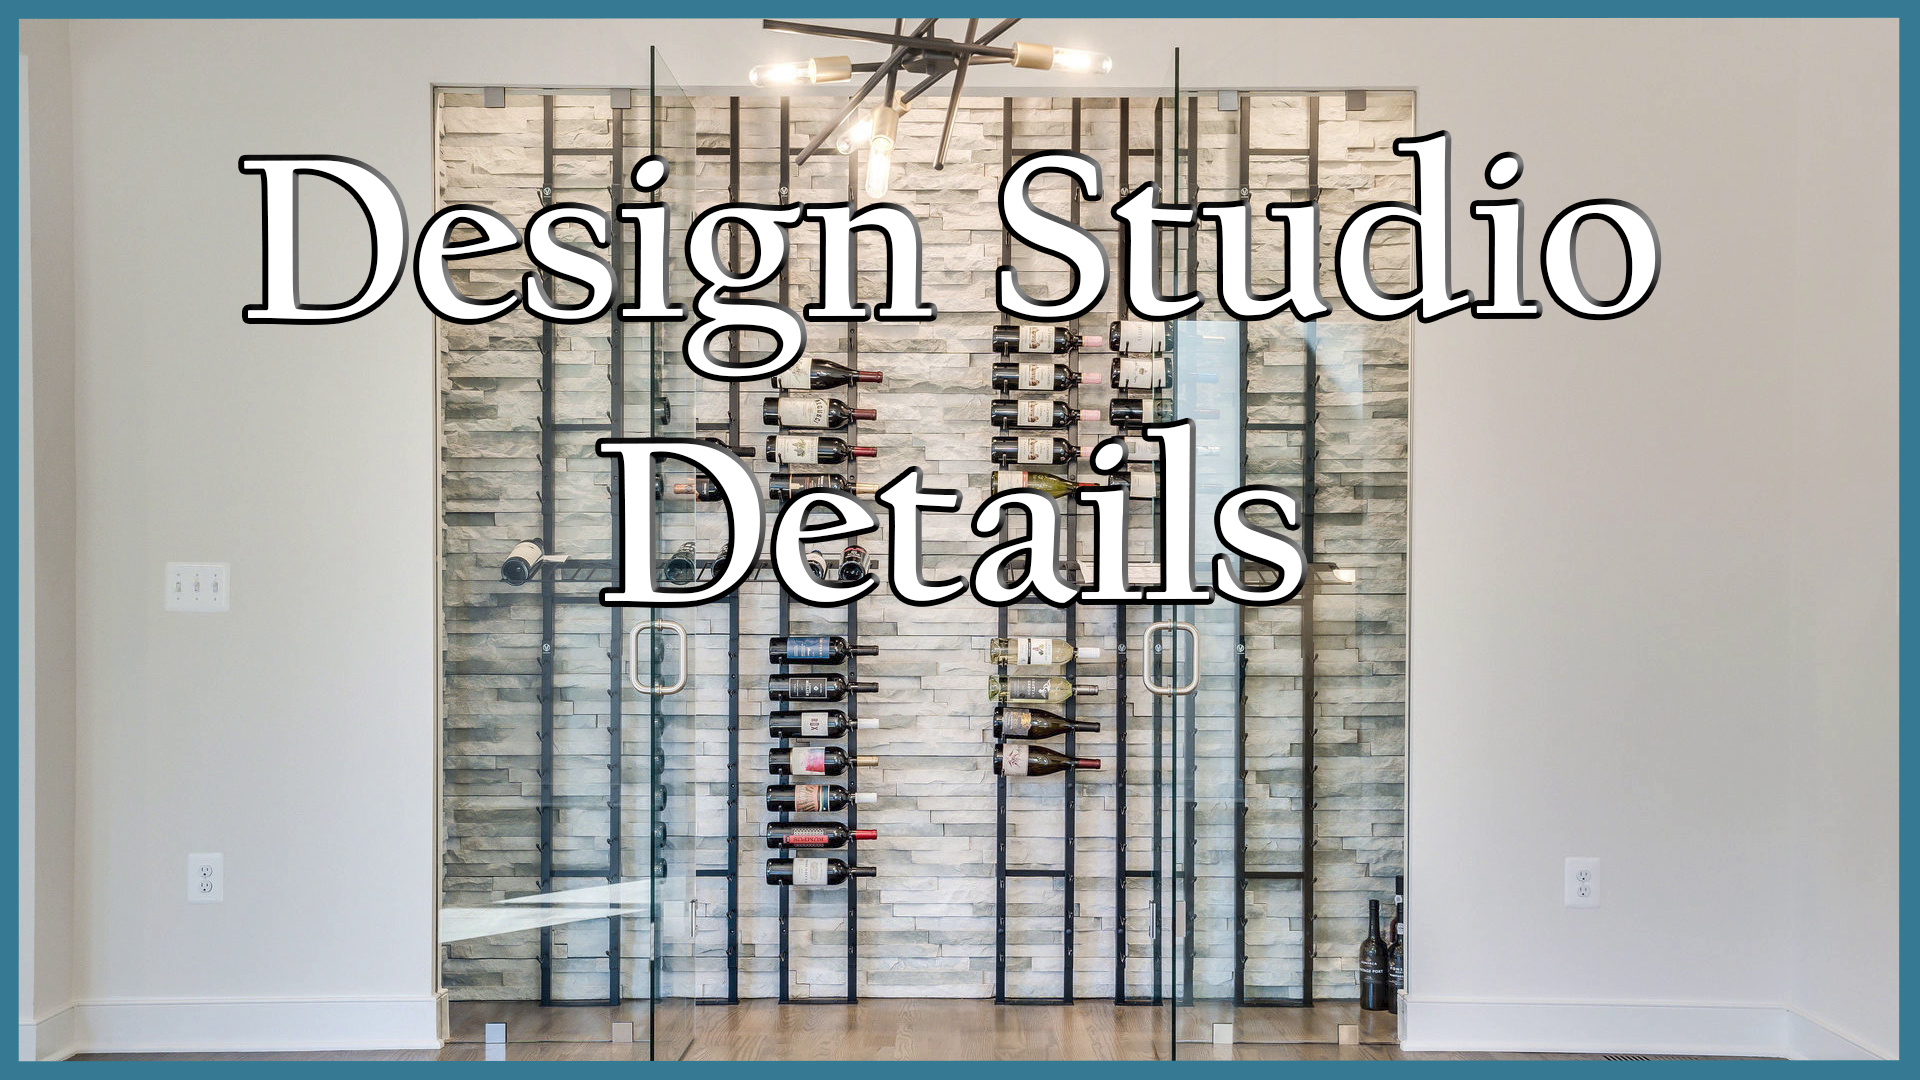 President Michael Schnitzer at the Design Studio | Design Studio Details